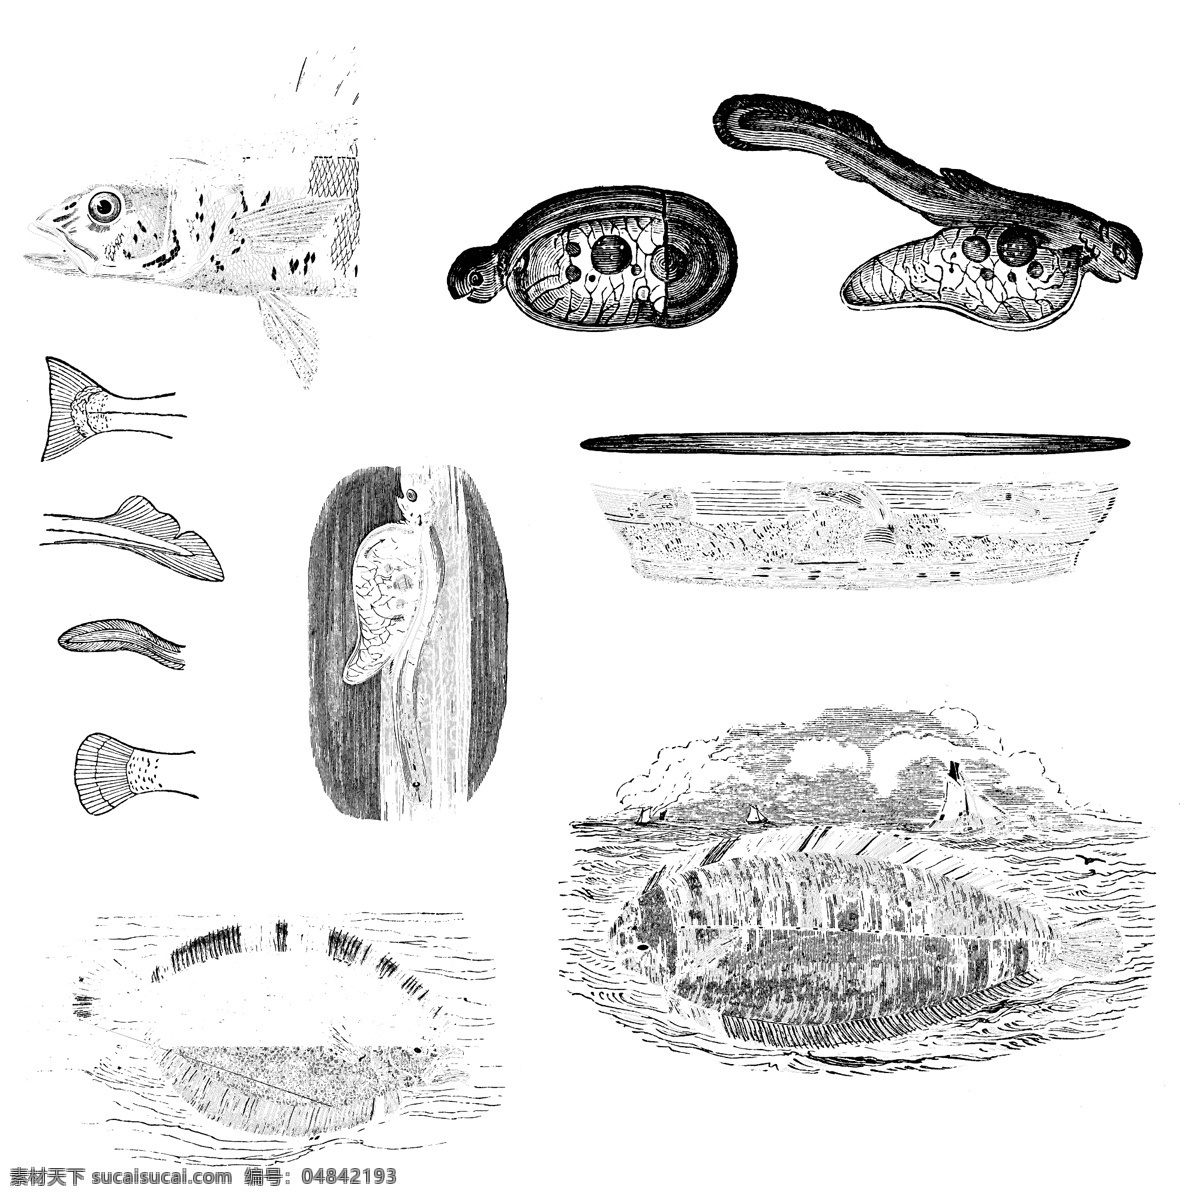 鱼类 贝 甲壳 类 欧美 古典 线条 矢量 动物 库 欧洲古典素材 矢量素材 素描素材 线条素材 非 主流 矢量图 其他矢量图